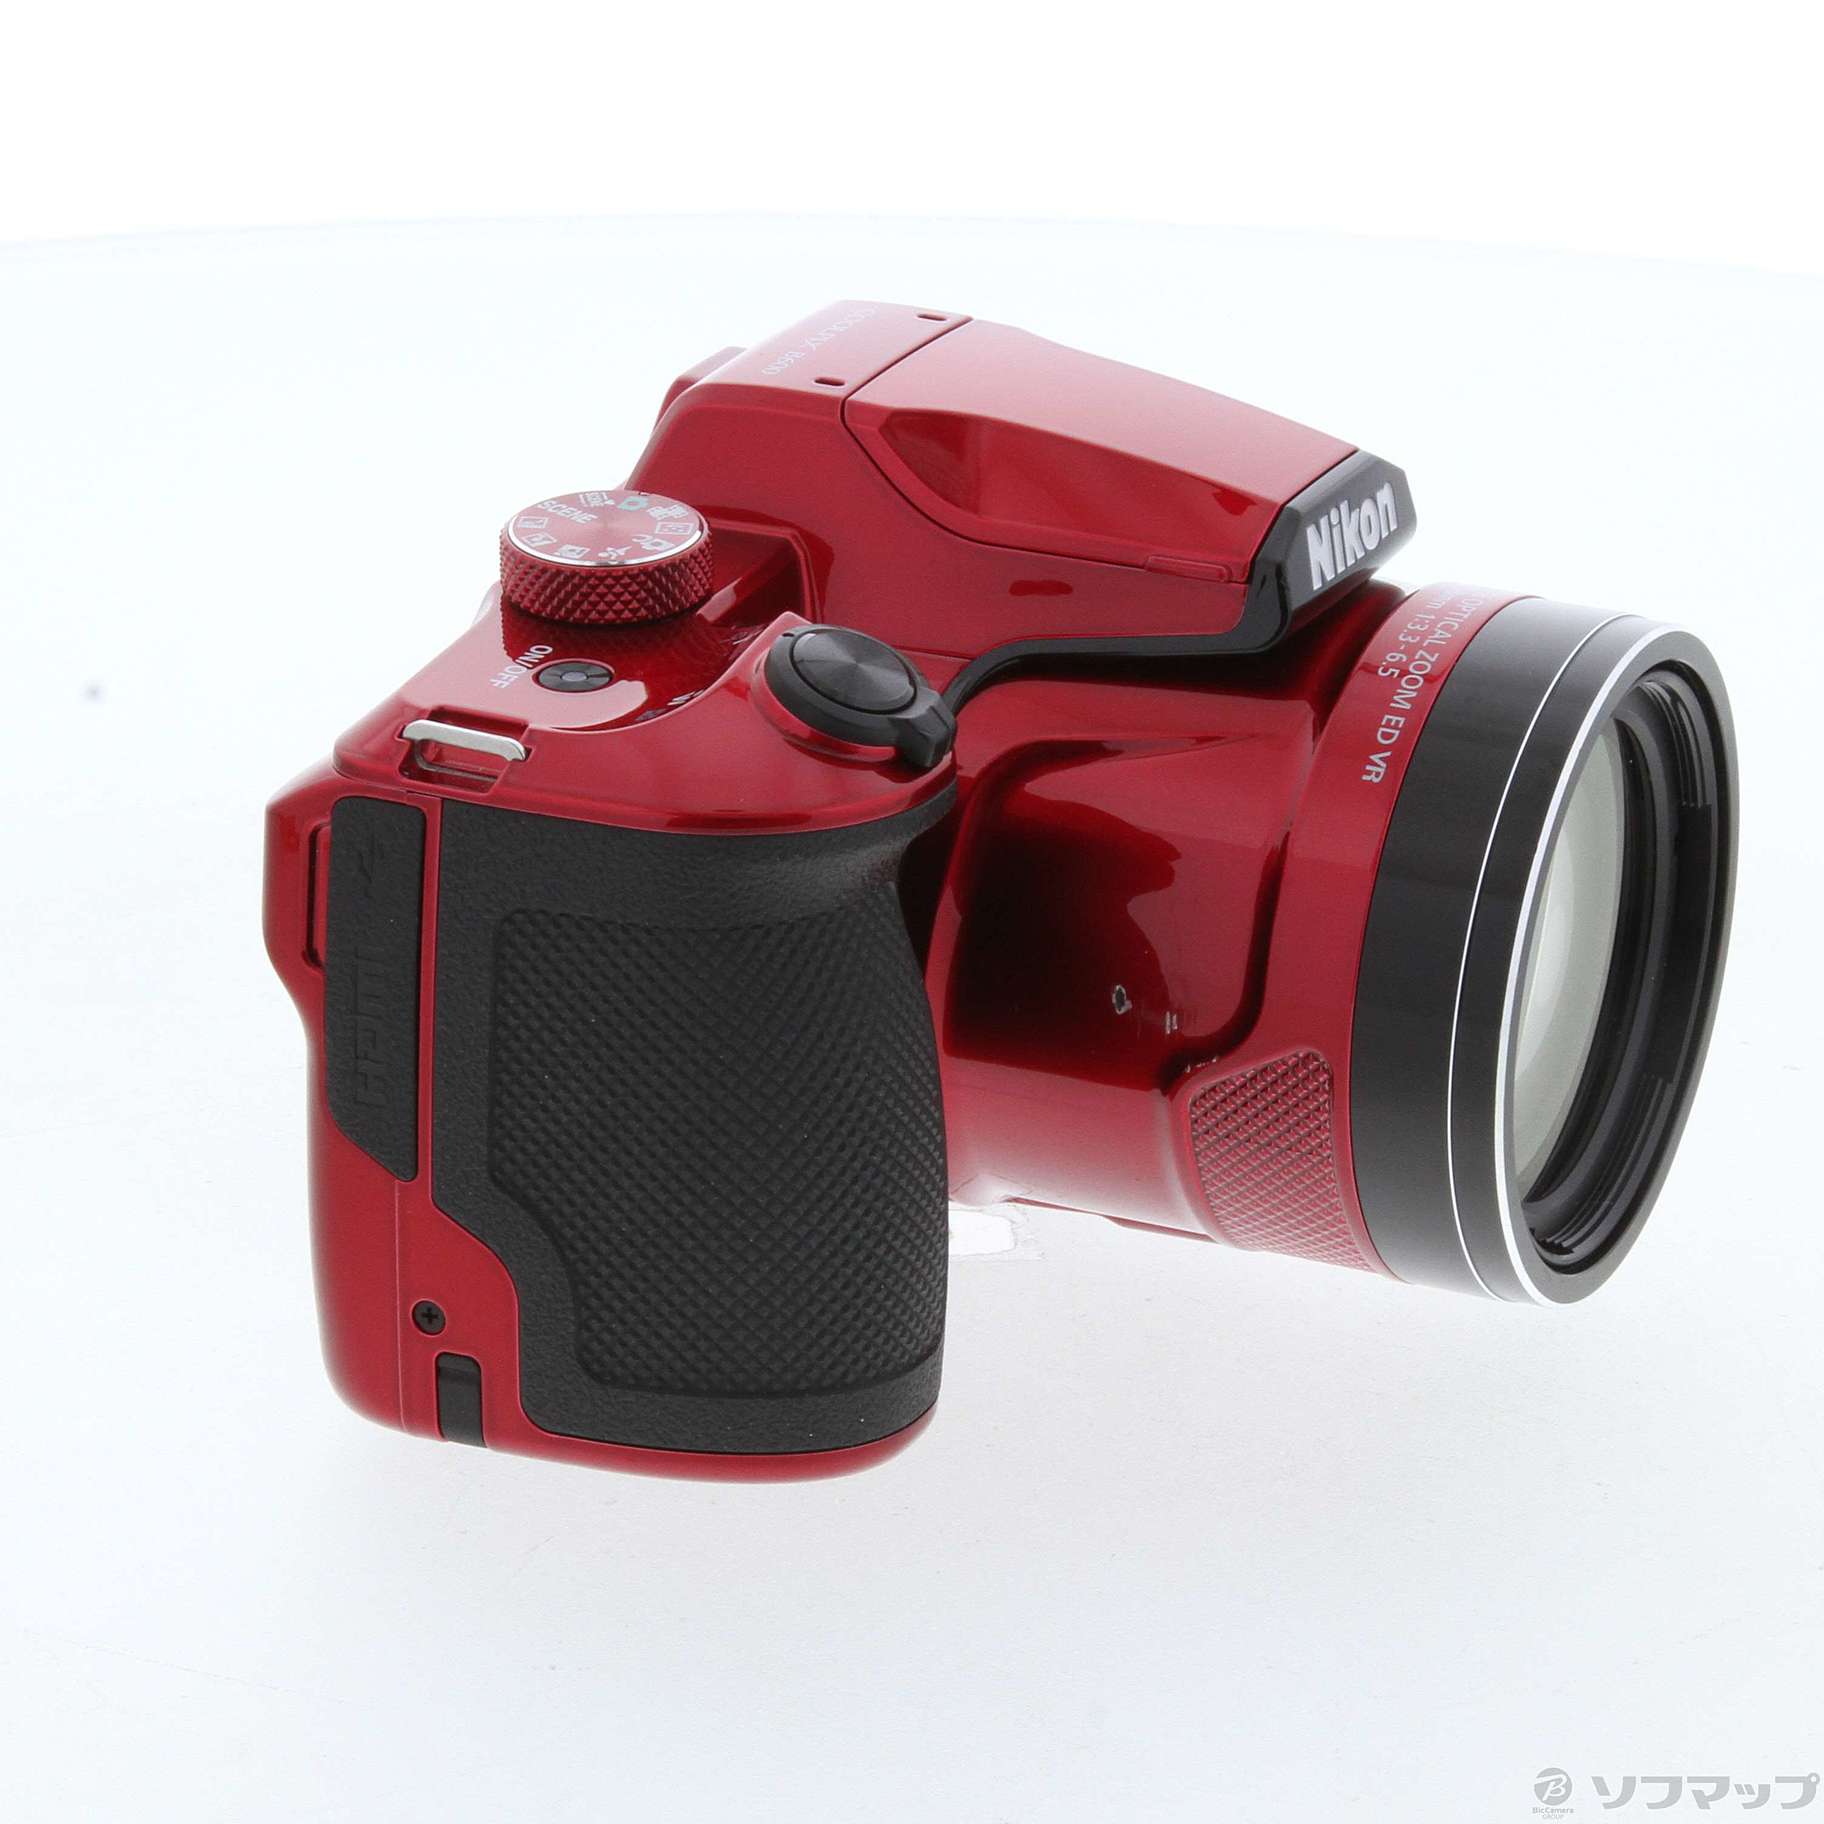 保証印あり 新品 未使用品 Nikon COOLPIX B600 RD - デジタルカメラ